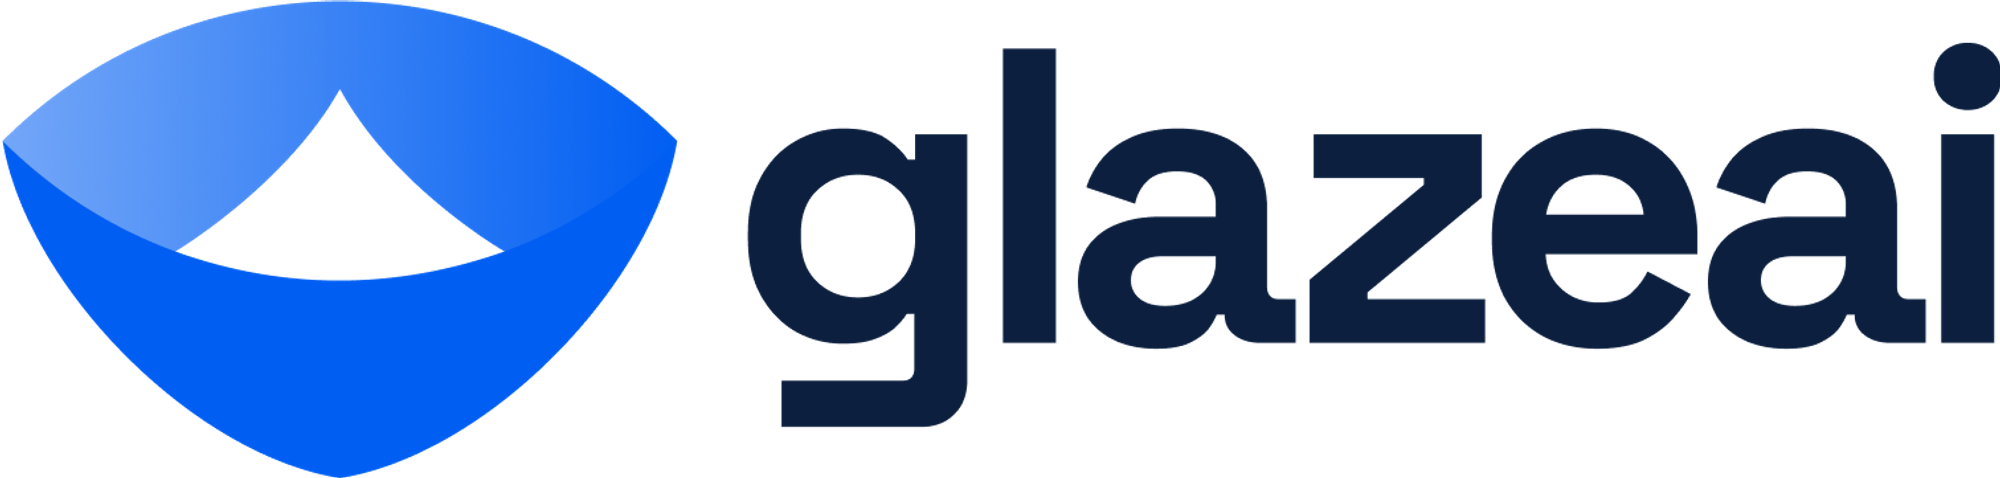 Modern logo design for glazeai.com